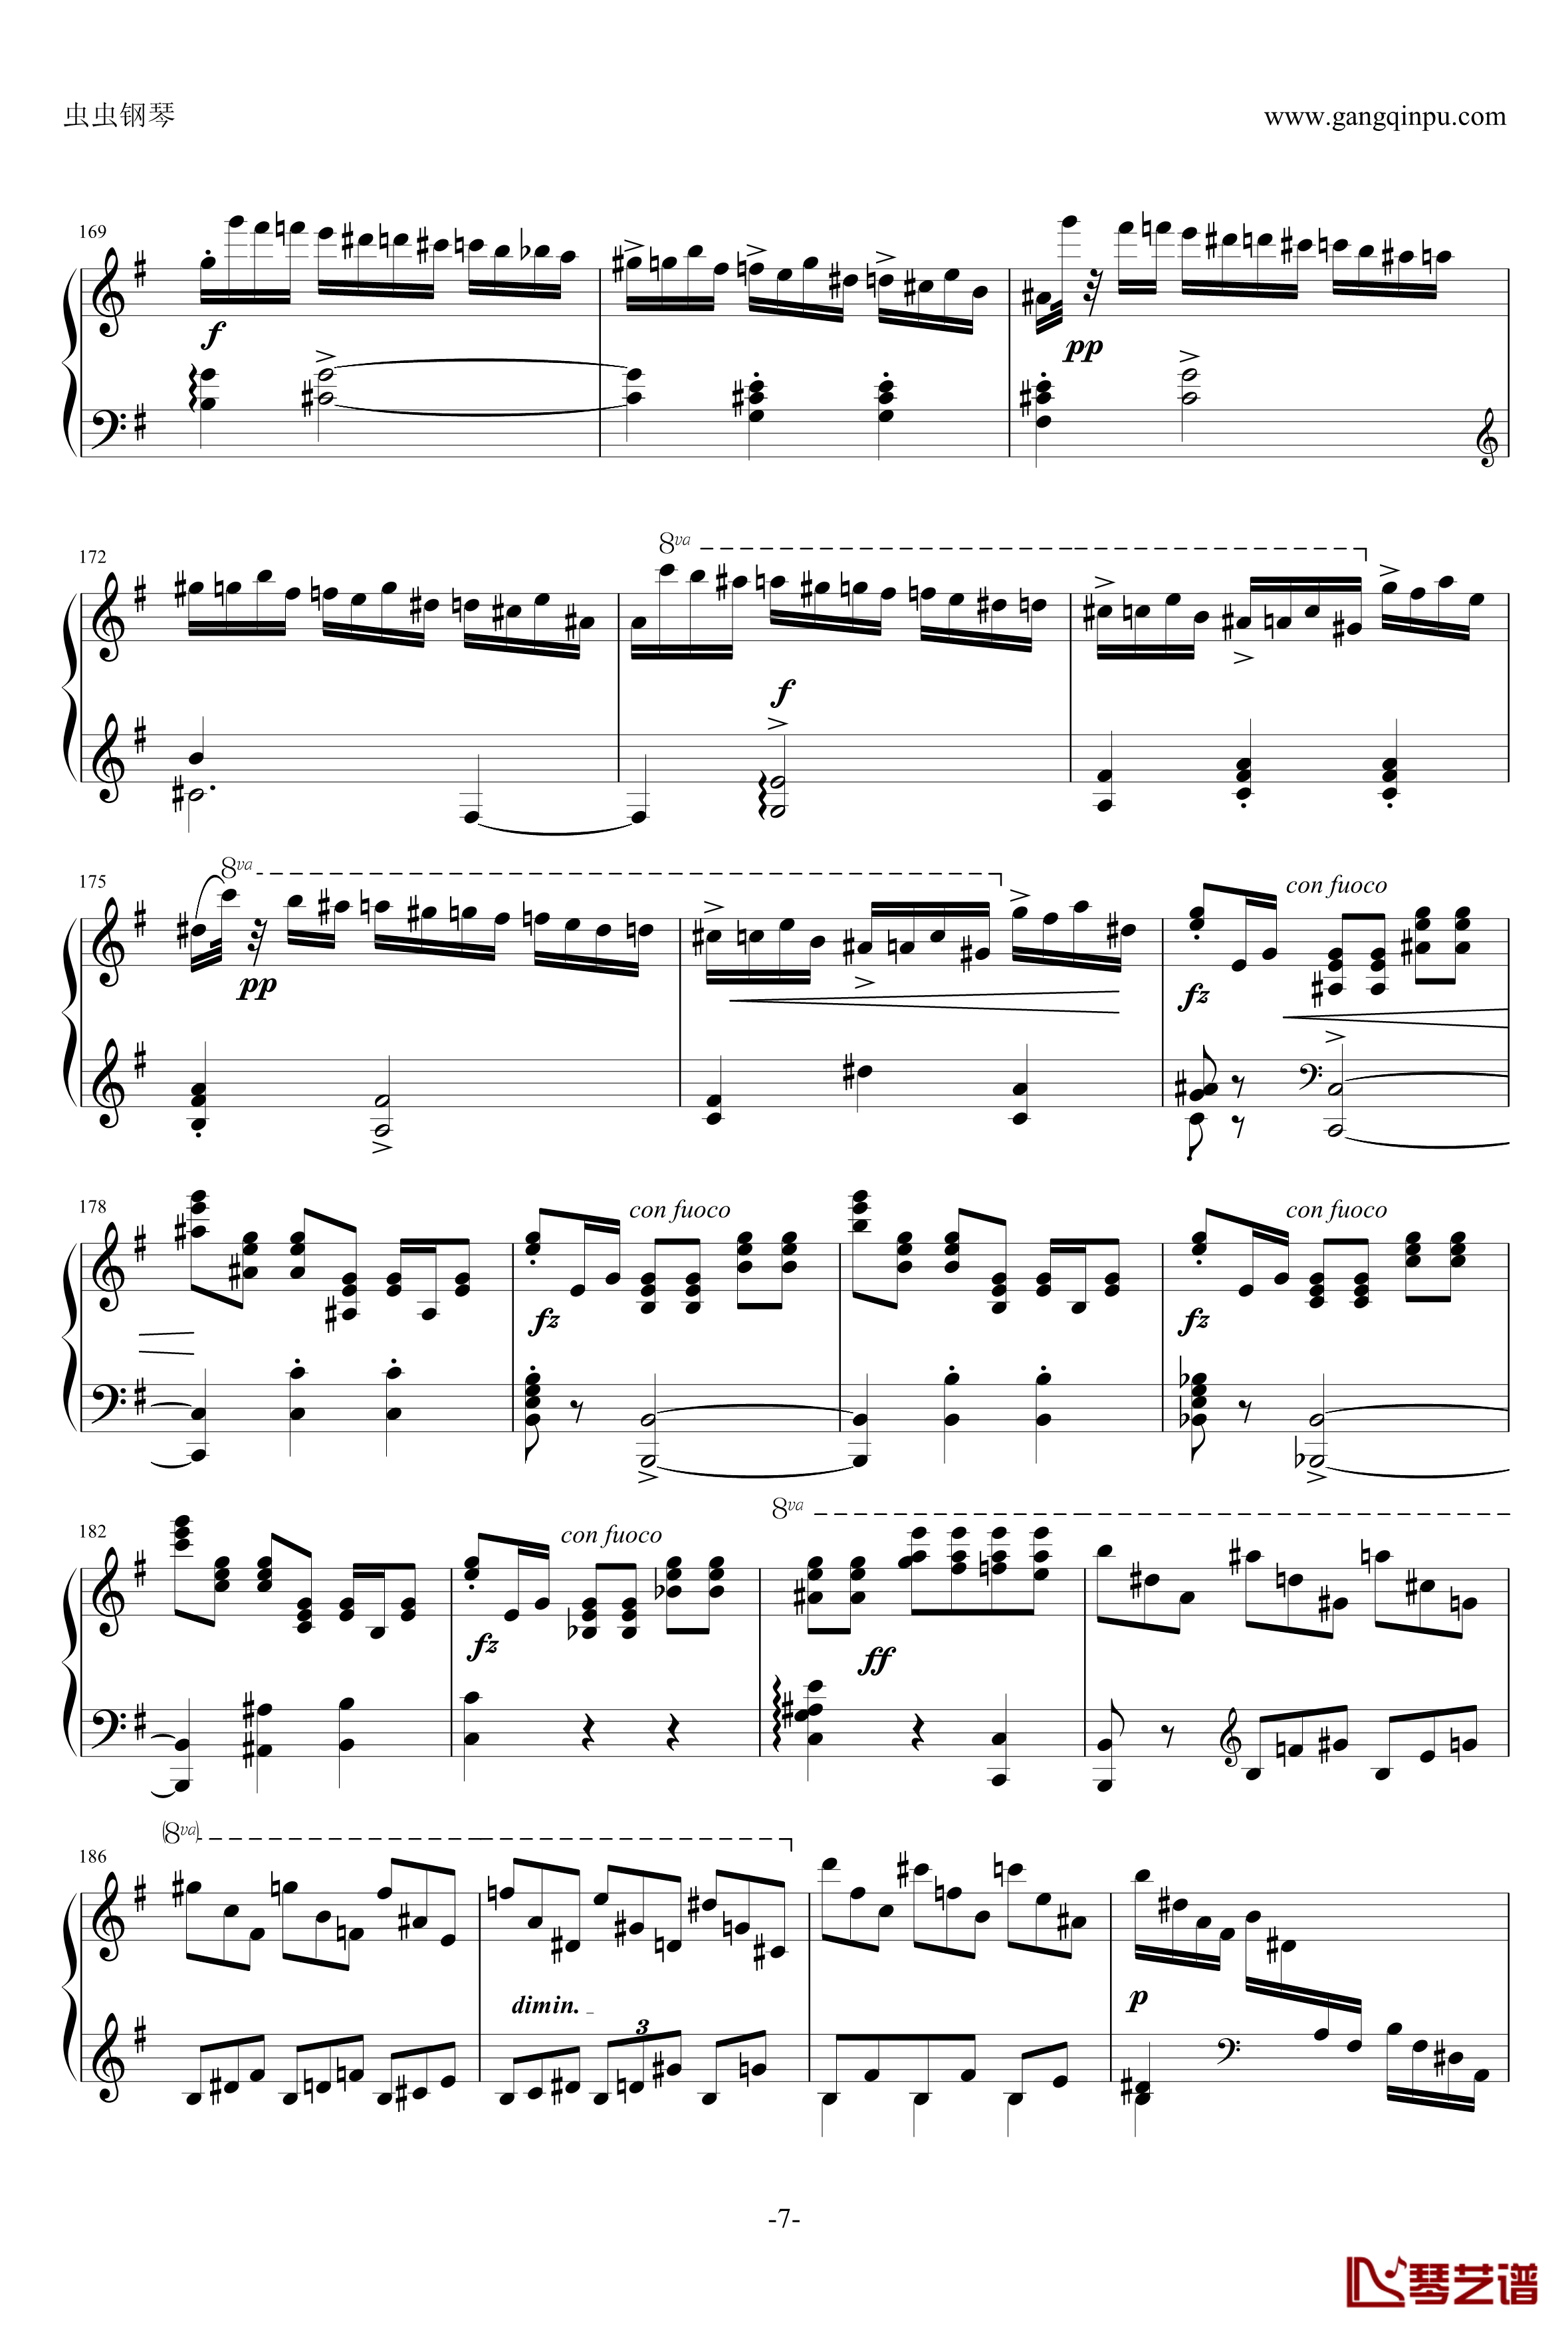 e小调钢琴协奏曲钢琴谱-乐之琴简易钢琴版-肖邦-chopin7